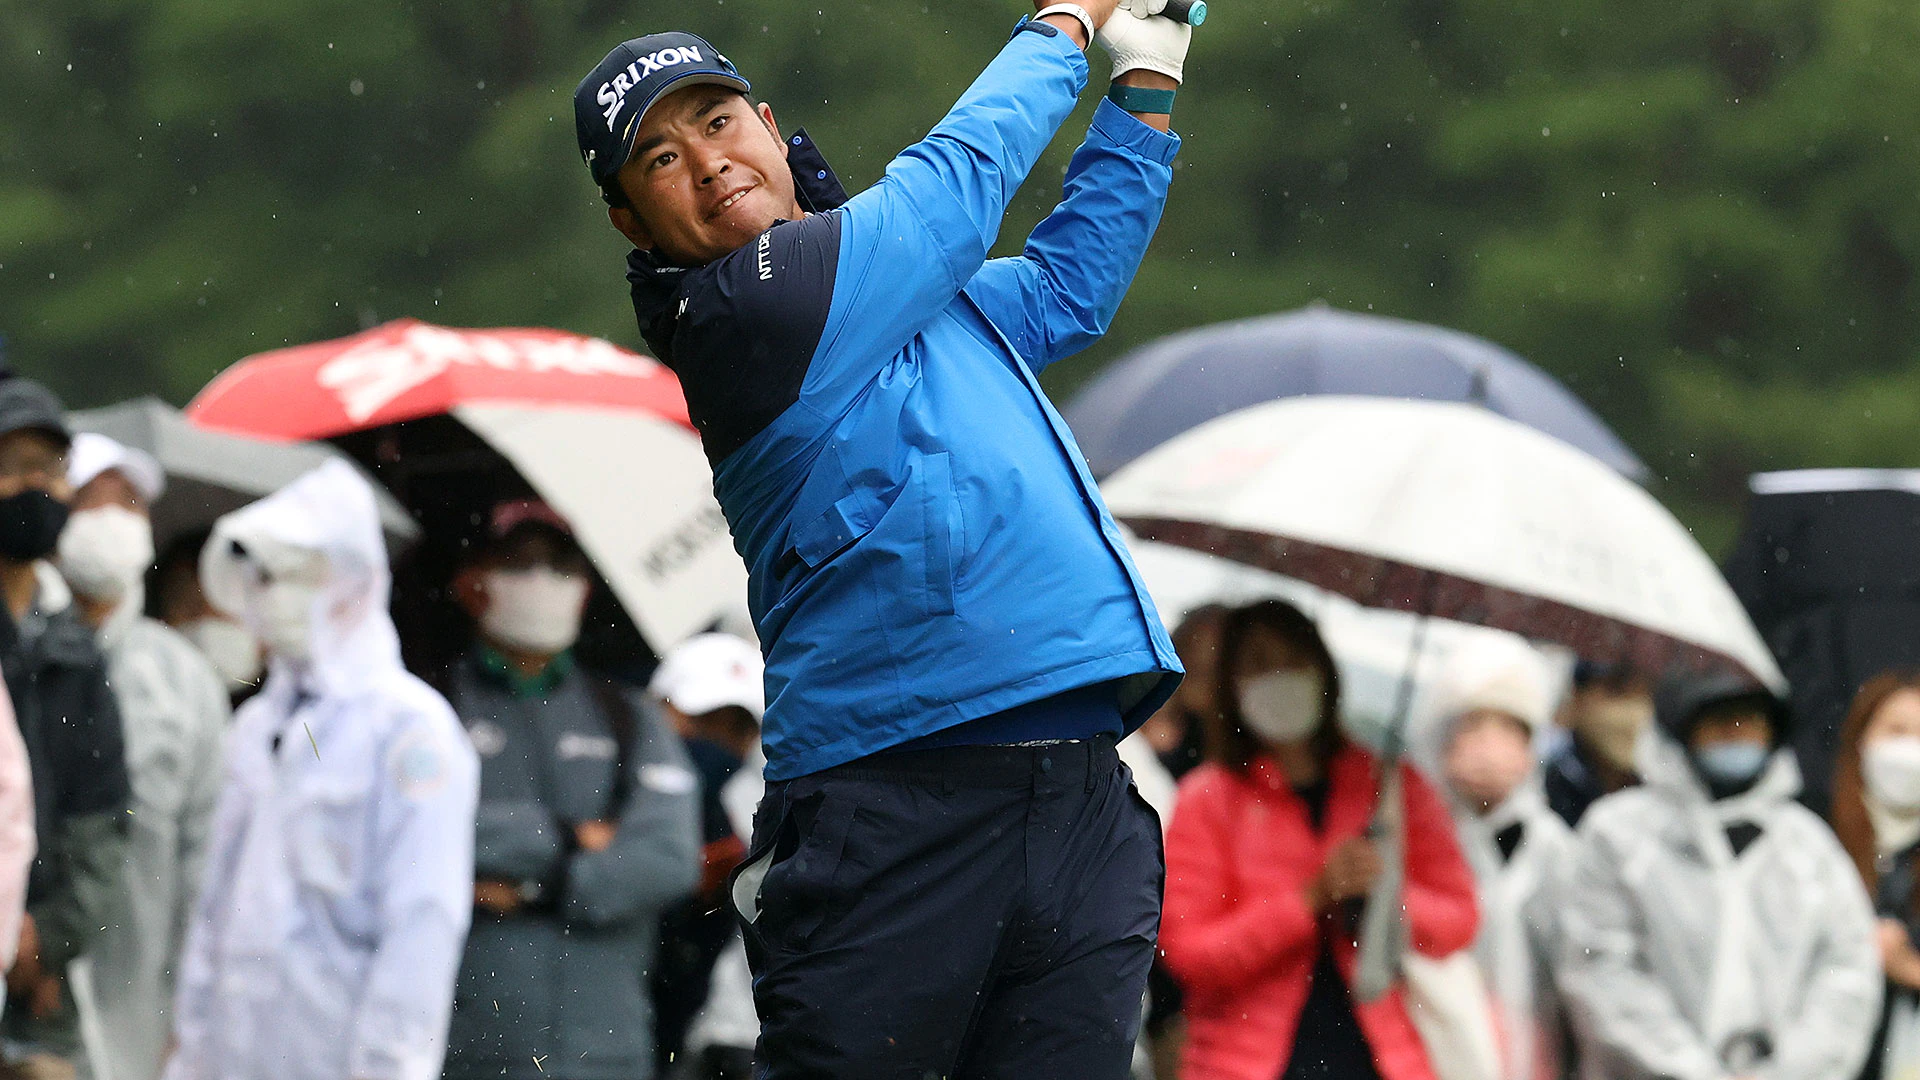 Amid cold and rain, Hideki Matsuyama takes one-shot lead at Zozo in Japan